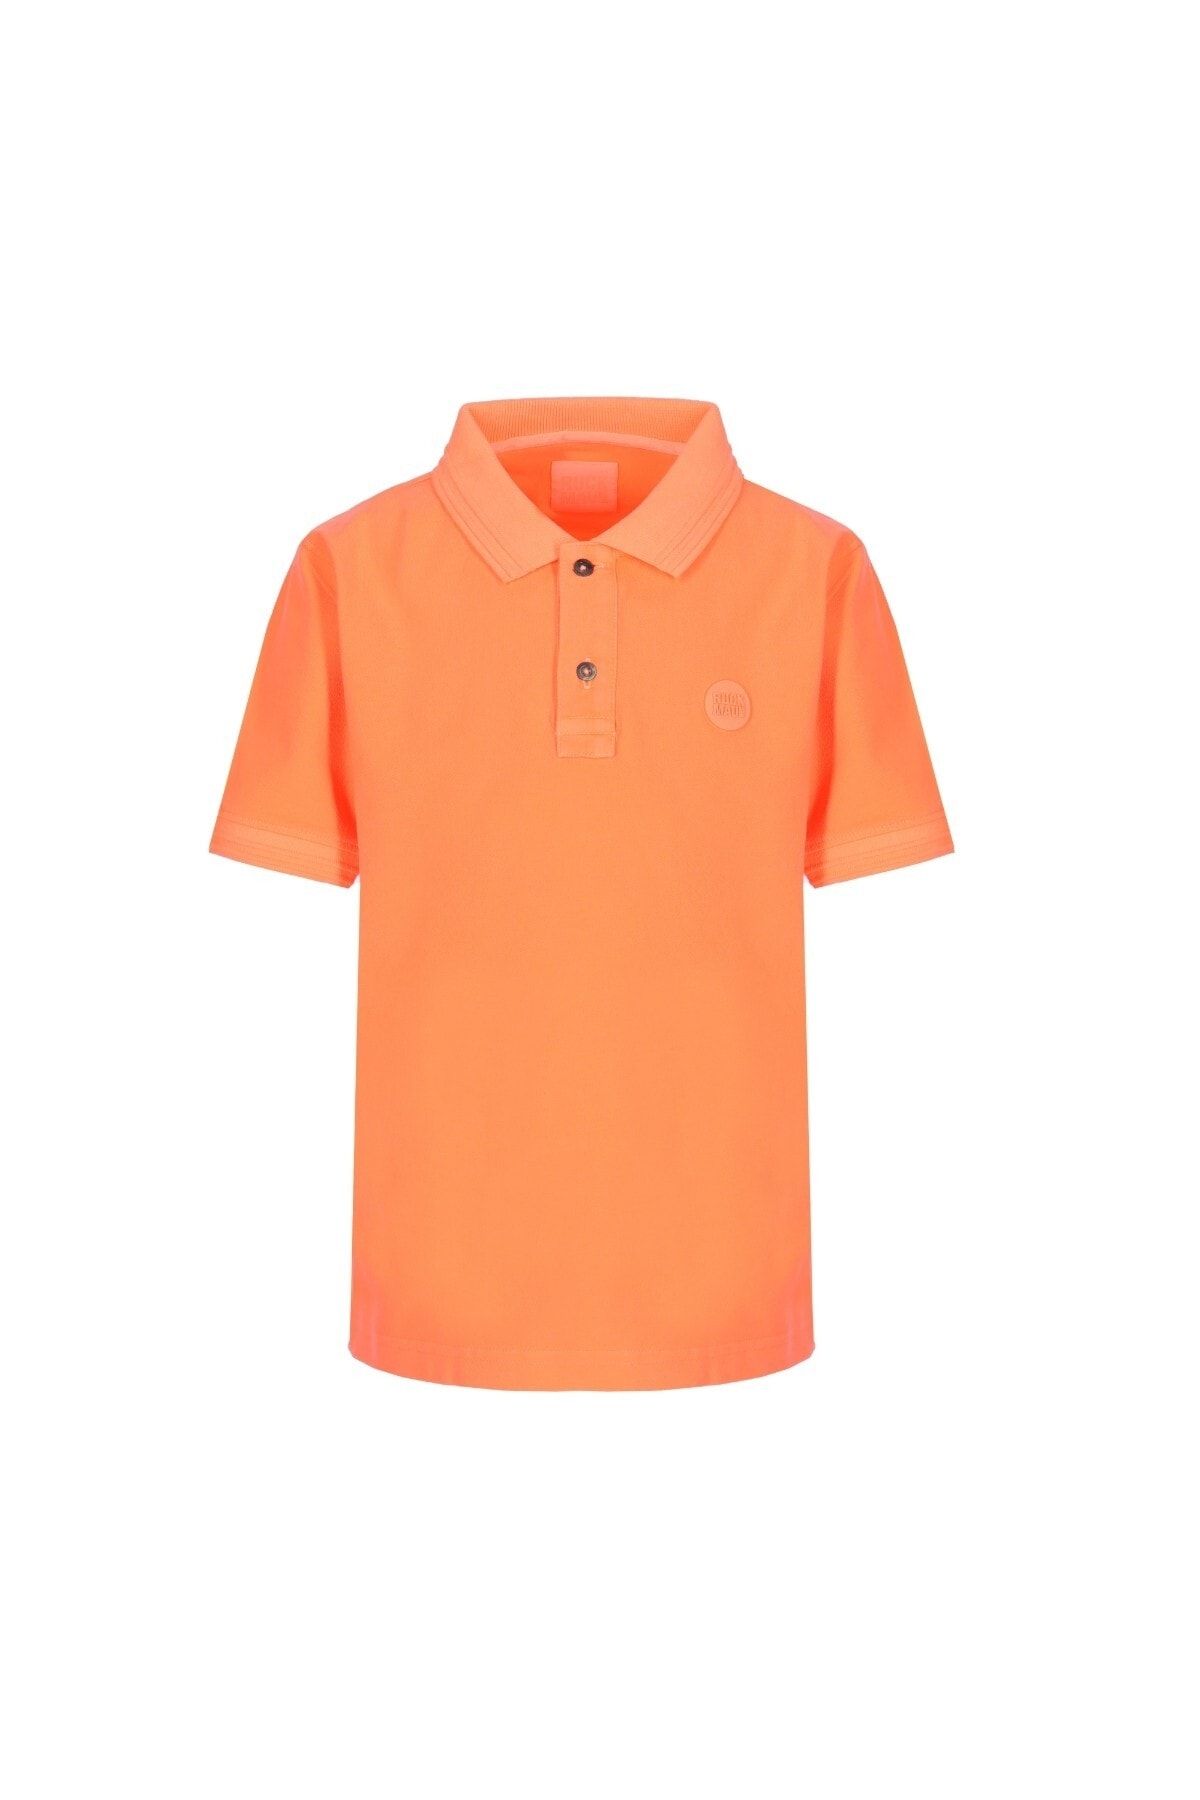 Ruck & Maul Çocuk Polo Tişört 23313 Jr 1423 - Neon Orange